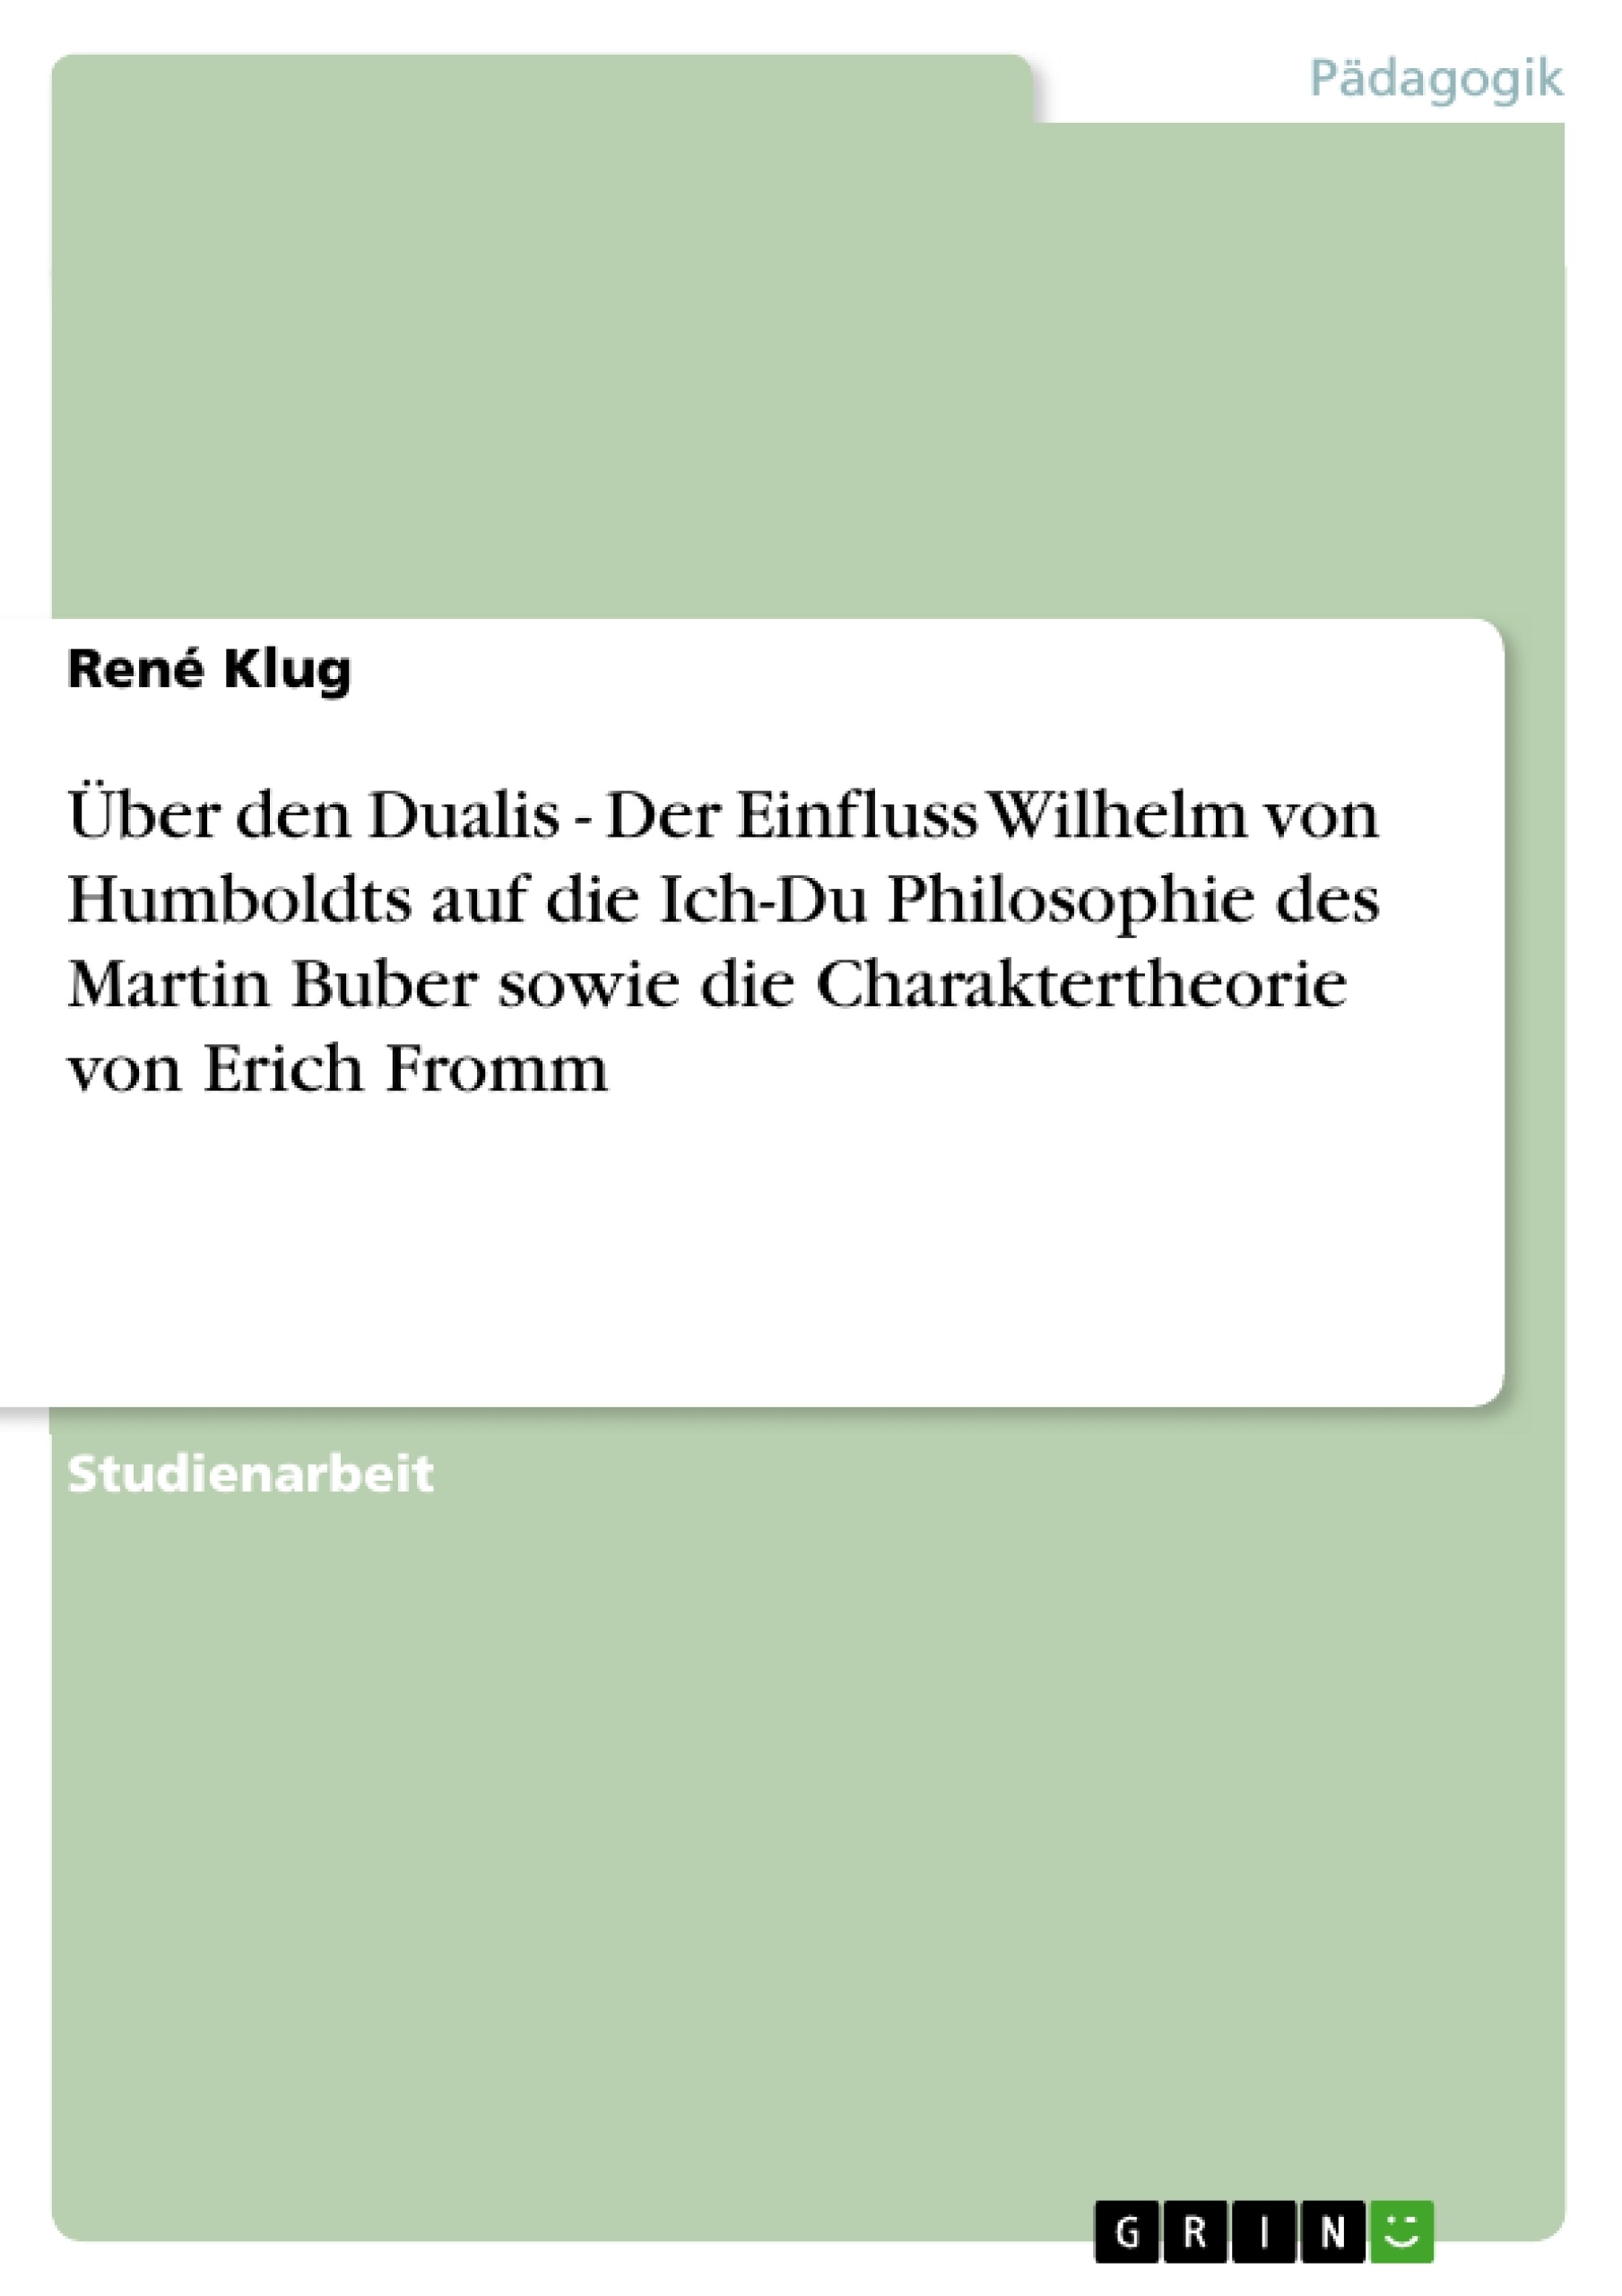 Title: Über den Dualis - Der Einfluss Wilhelm von Humboldts auf die Ich-Du Philosophie des Martin Buber sowie die Charaktertheorie von Erich Fromm